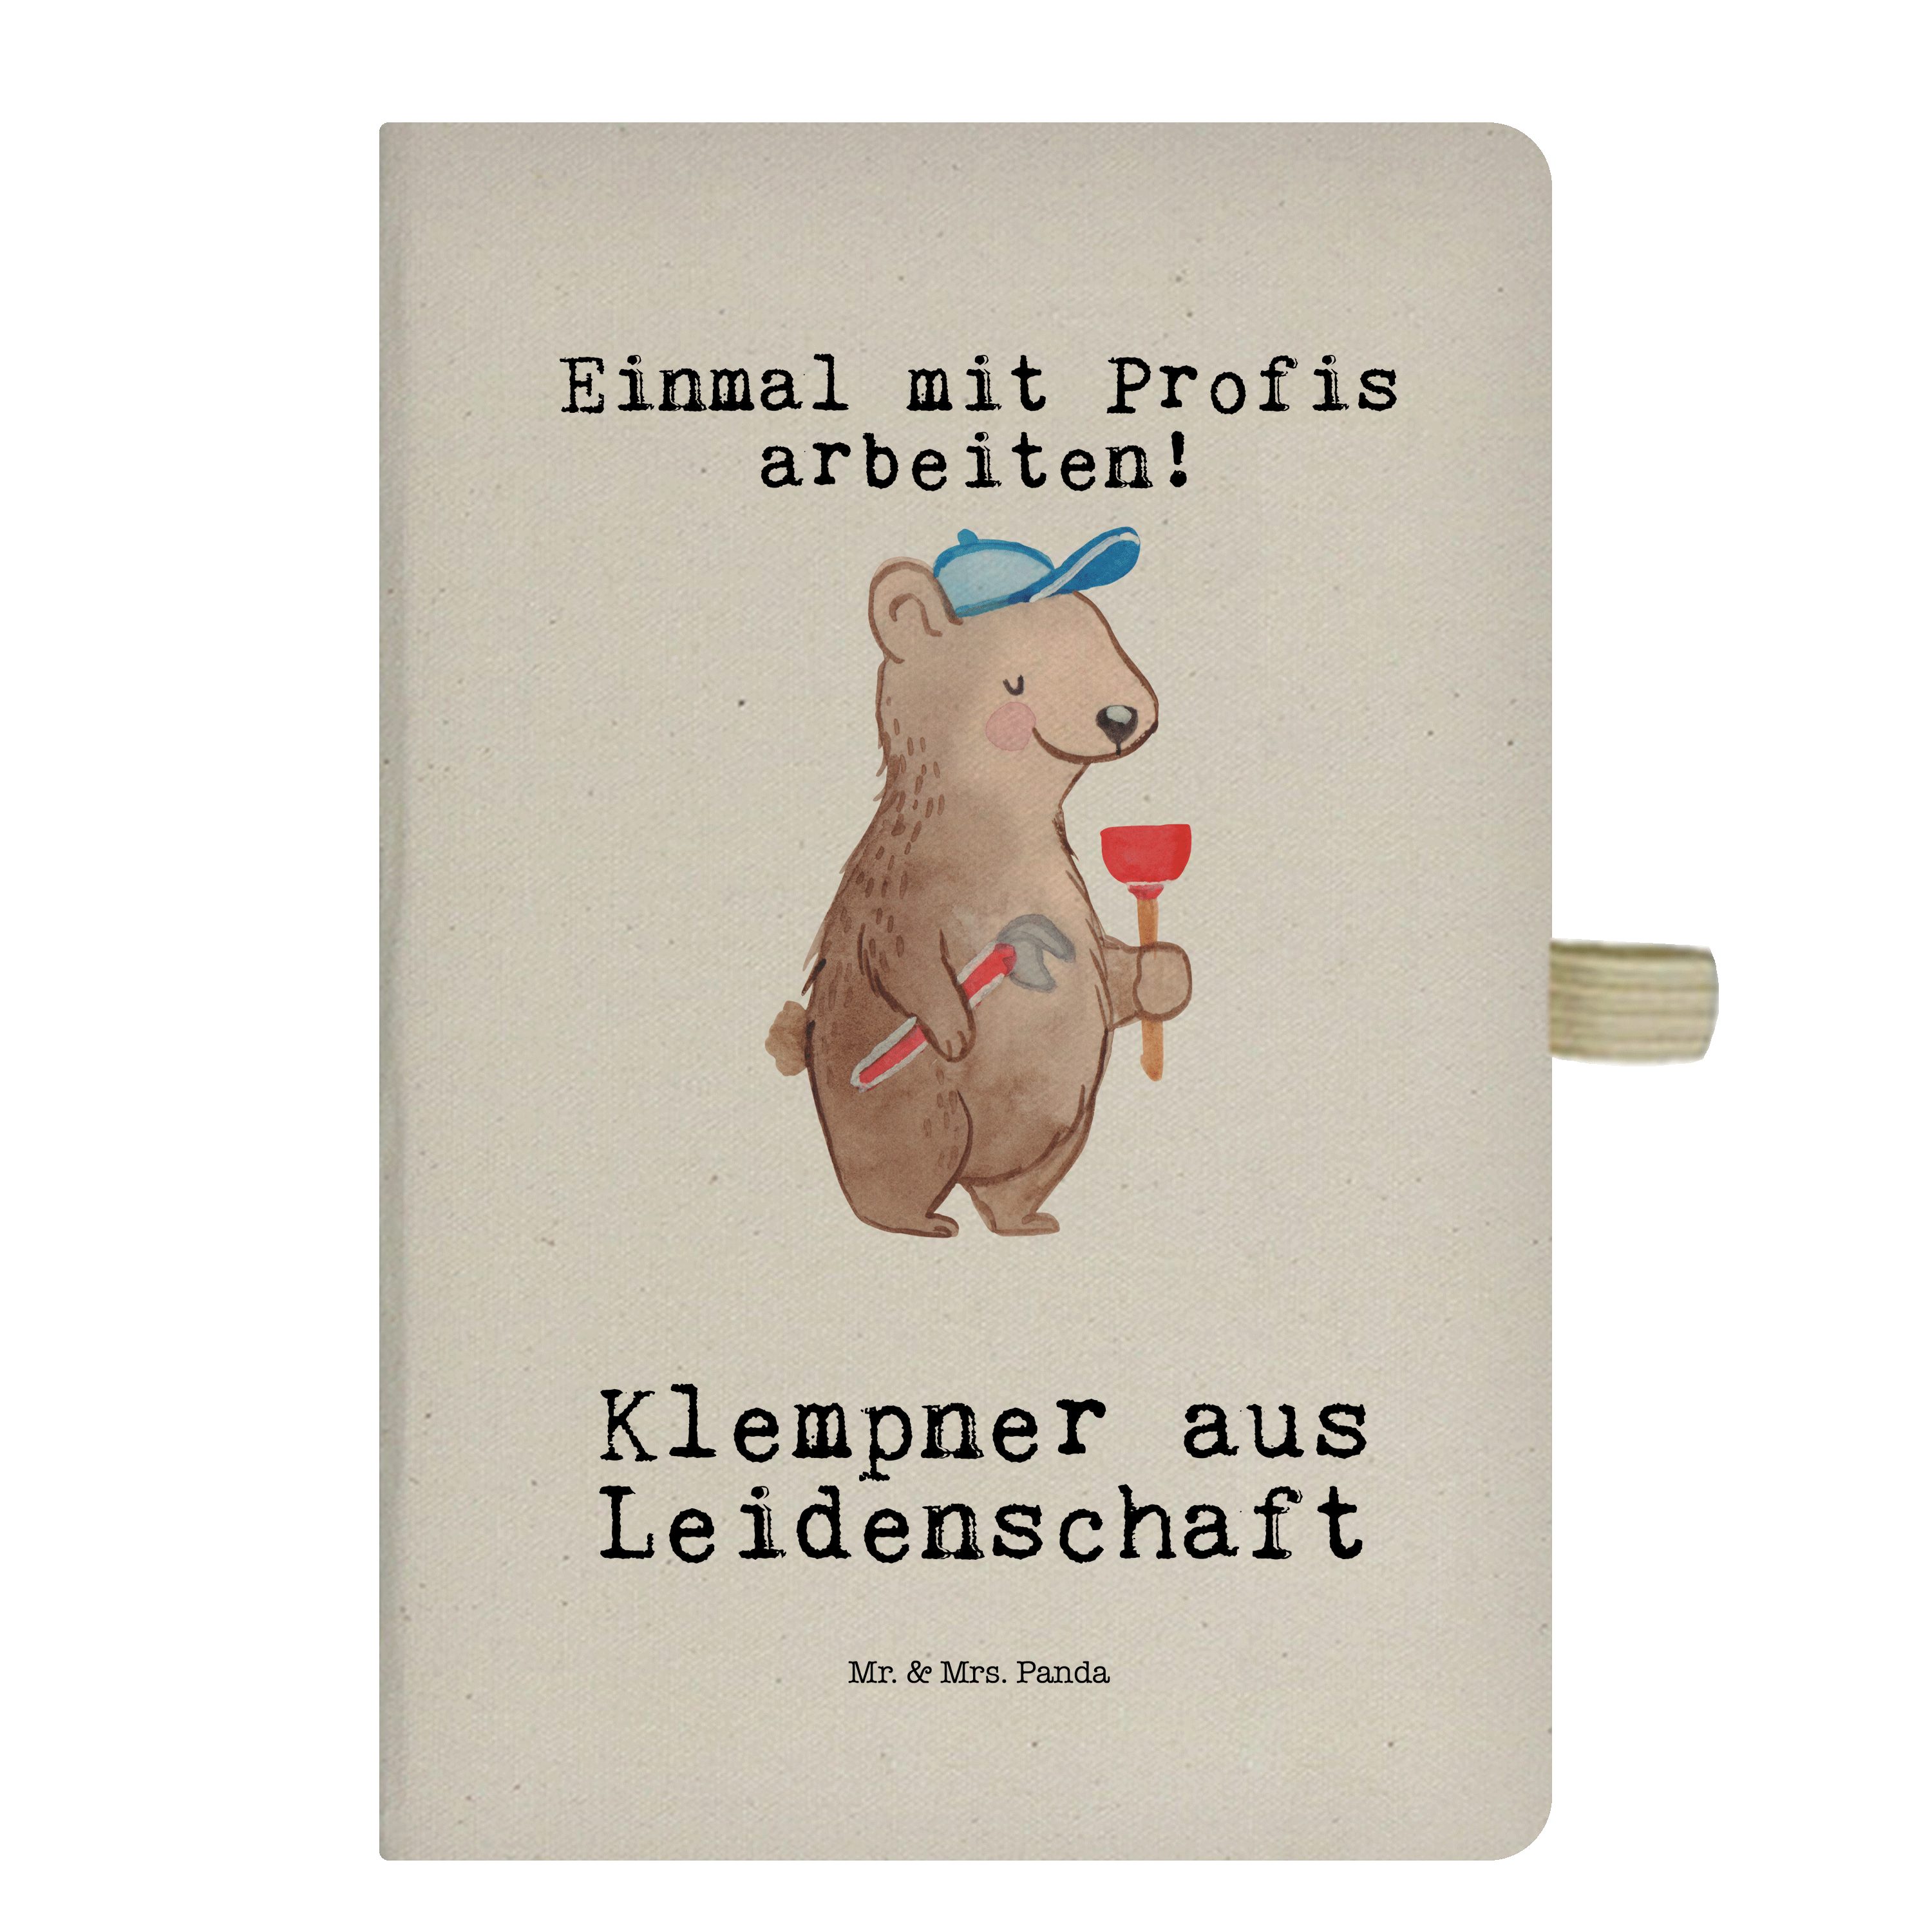 Mr. & Mrs. - Mrs. Klempner - Handwerke Panda Geschenk, Notizbuch Panda & Kladde, Transparent Leidenschaft Mr. aus